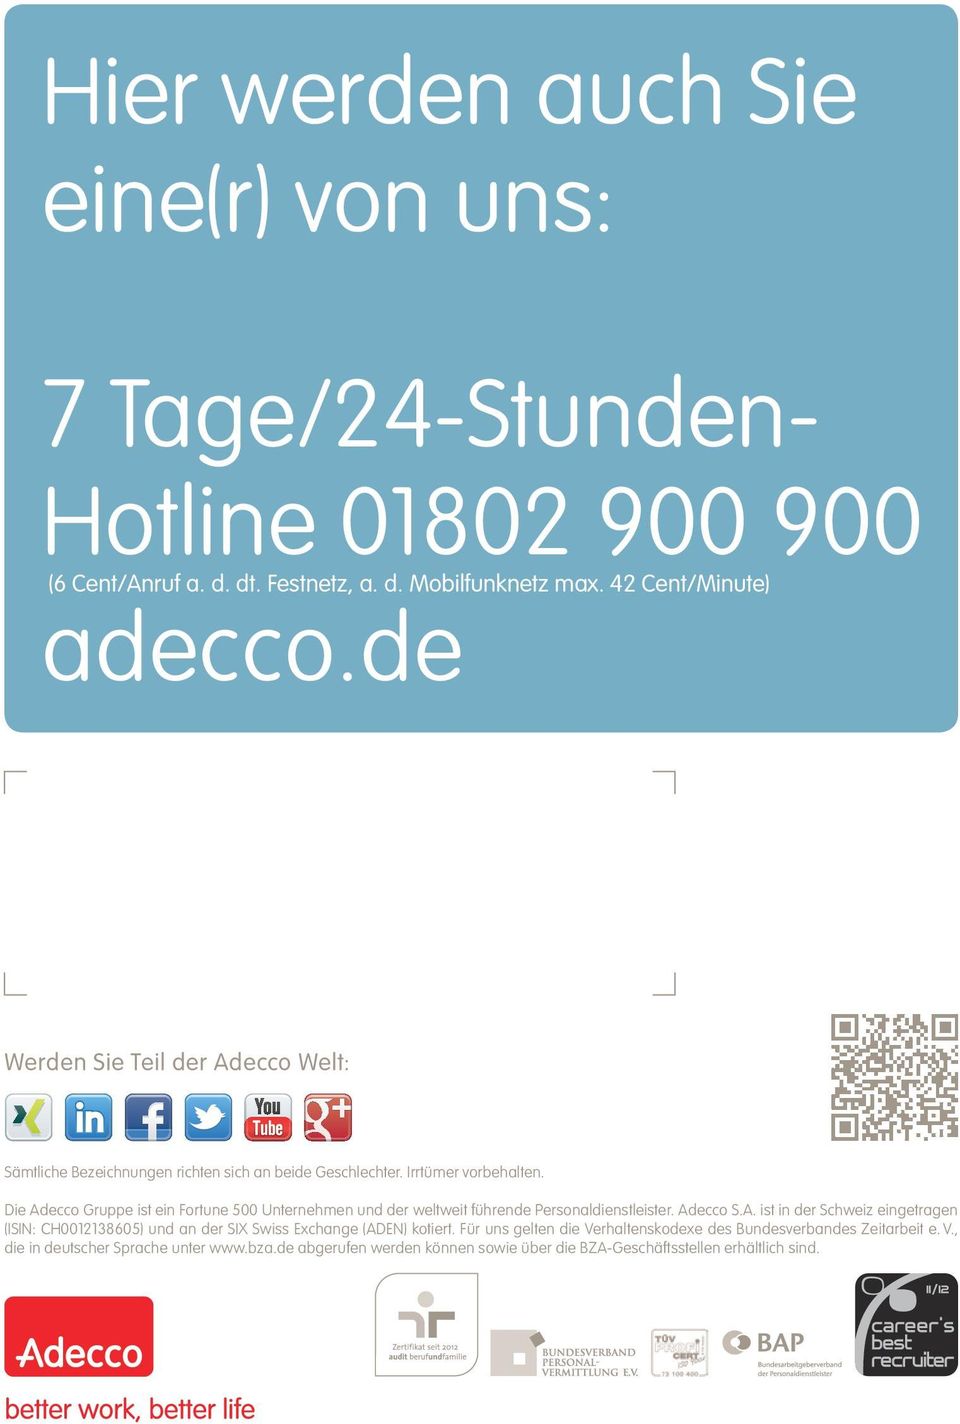 Die Adecco Gruppe ist ein Fortune 500 Unternehmen und der weltweit führende Personaldienstleister. Adecco S.A. ist in der Schweiz eingetragen (ISIN: CH0012138605) und an der SIX Swiss Exchange (ADEN) kotiert.